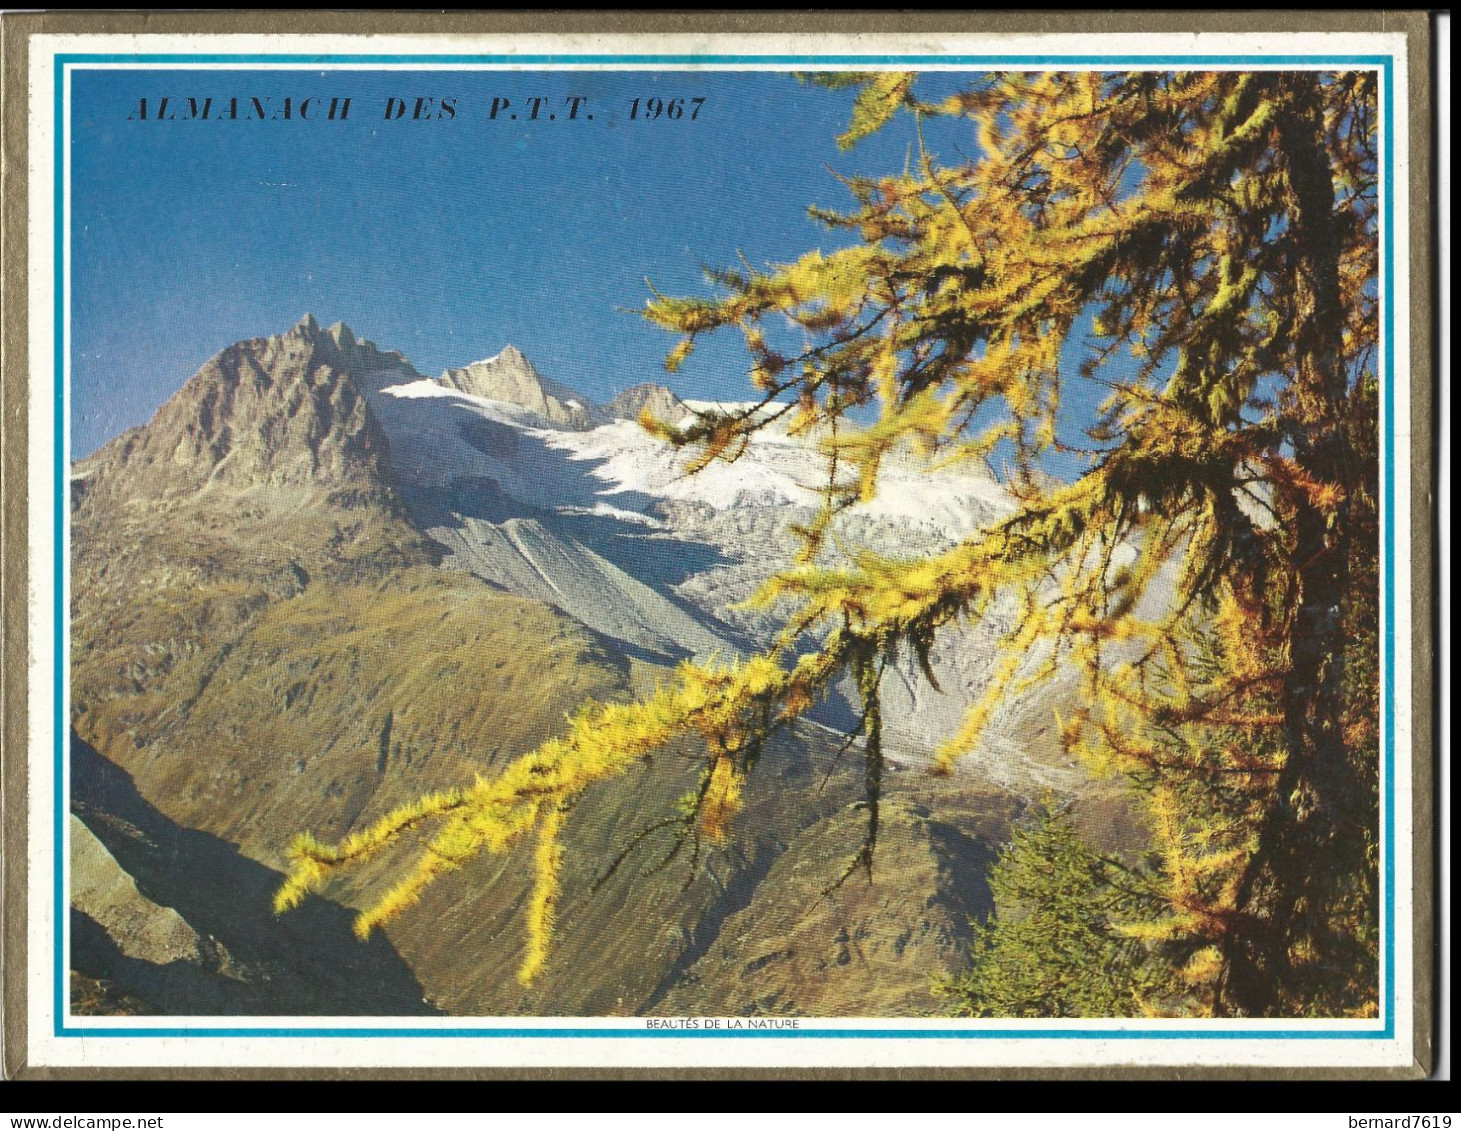 Almanach  Calendrier  P.T.T  -  La Poste -  1967 - Etretat - Beaute De La Nature - Grand Format : 1961-70